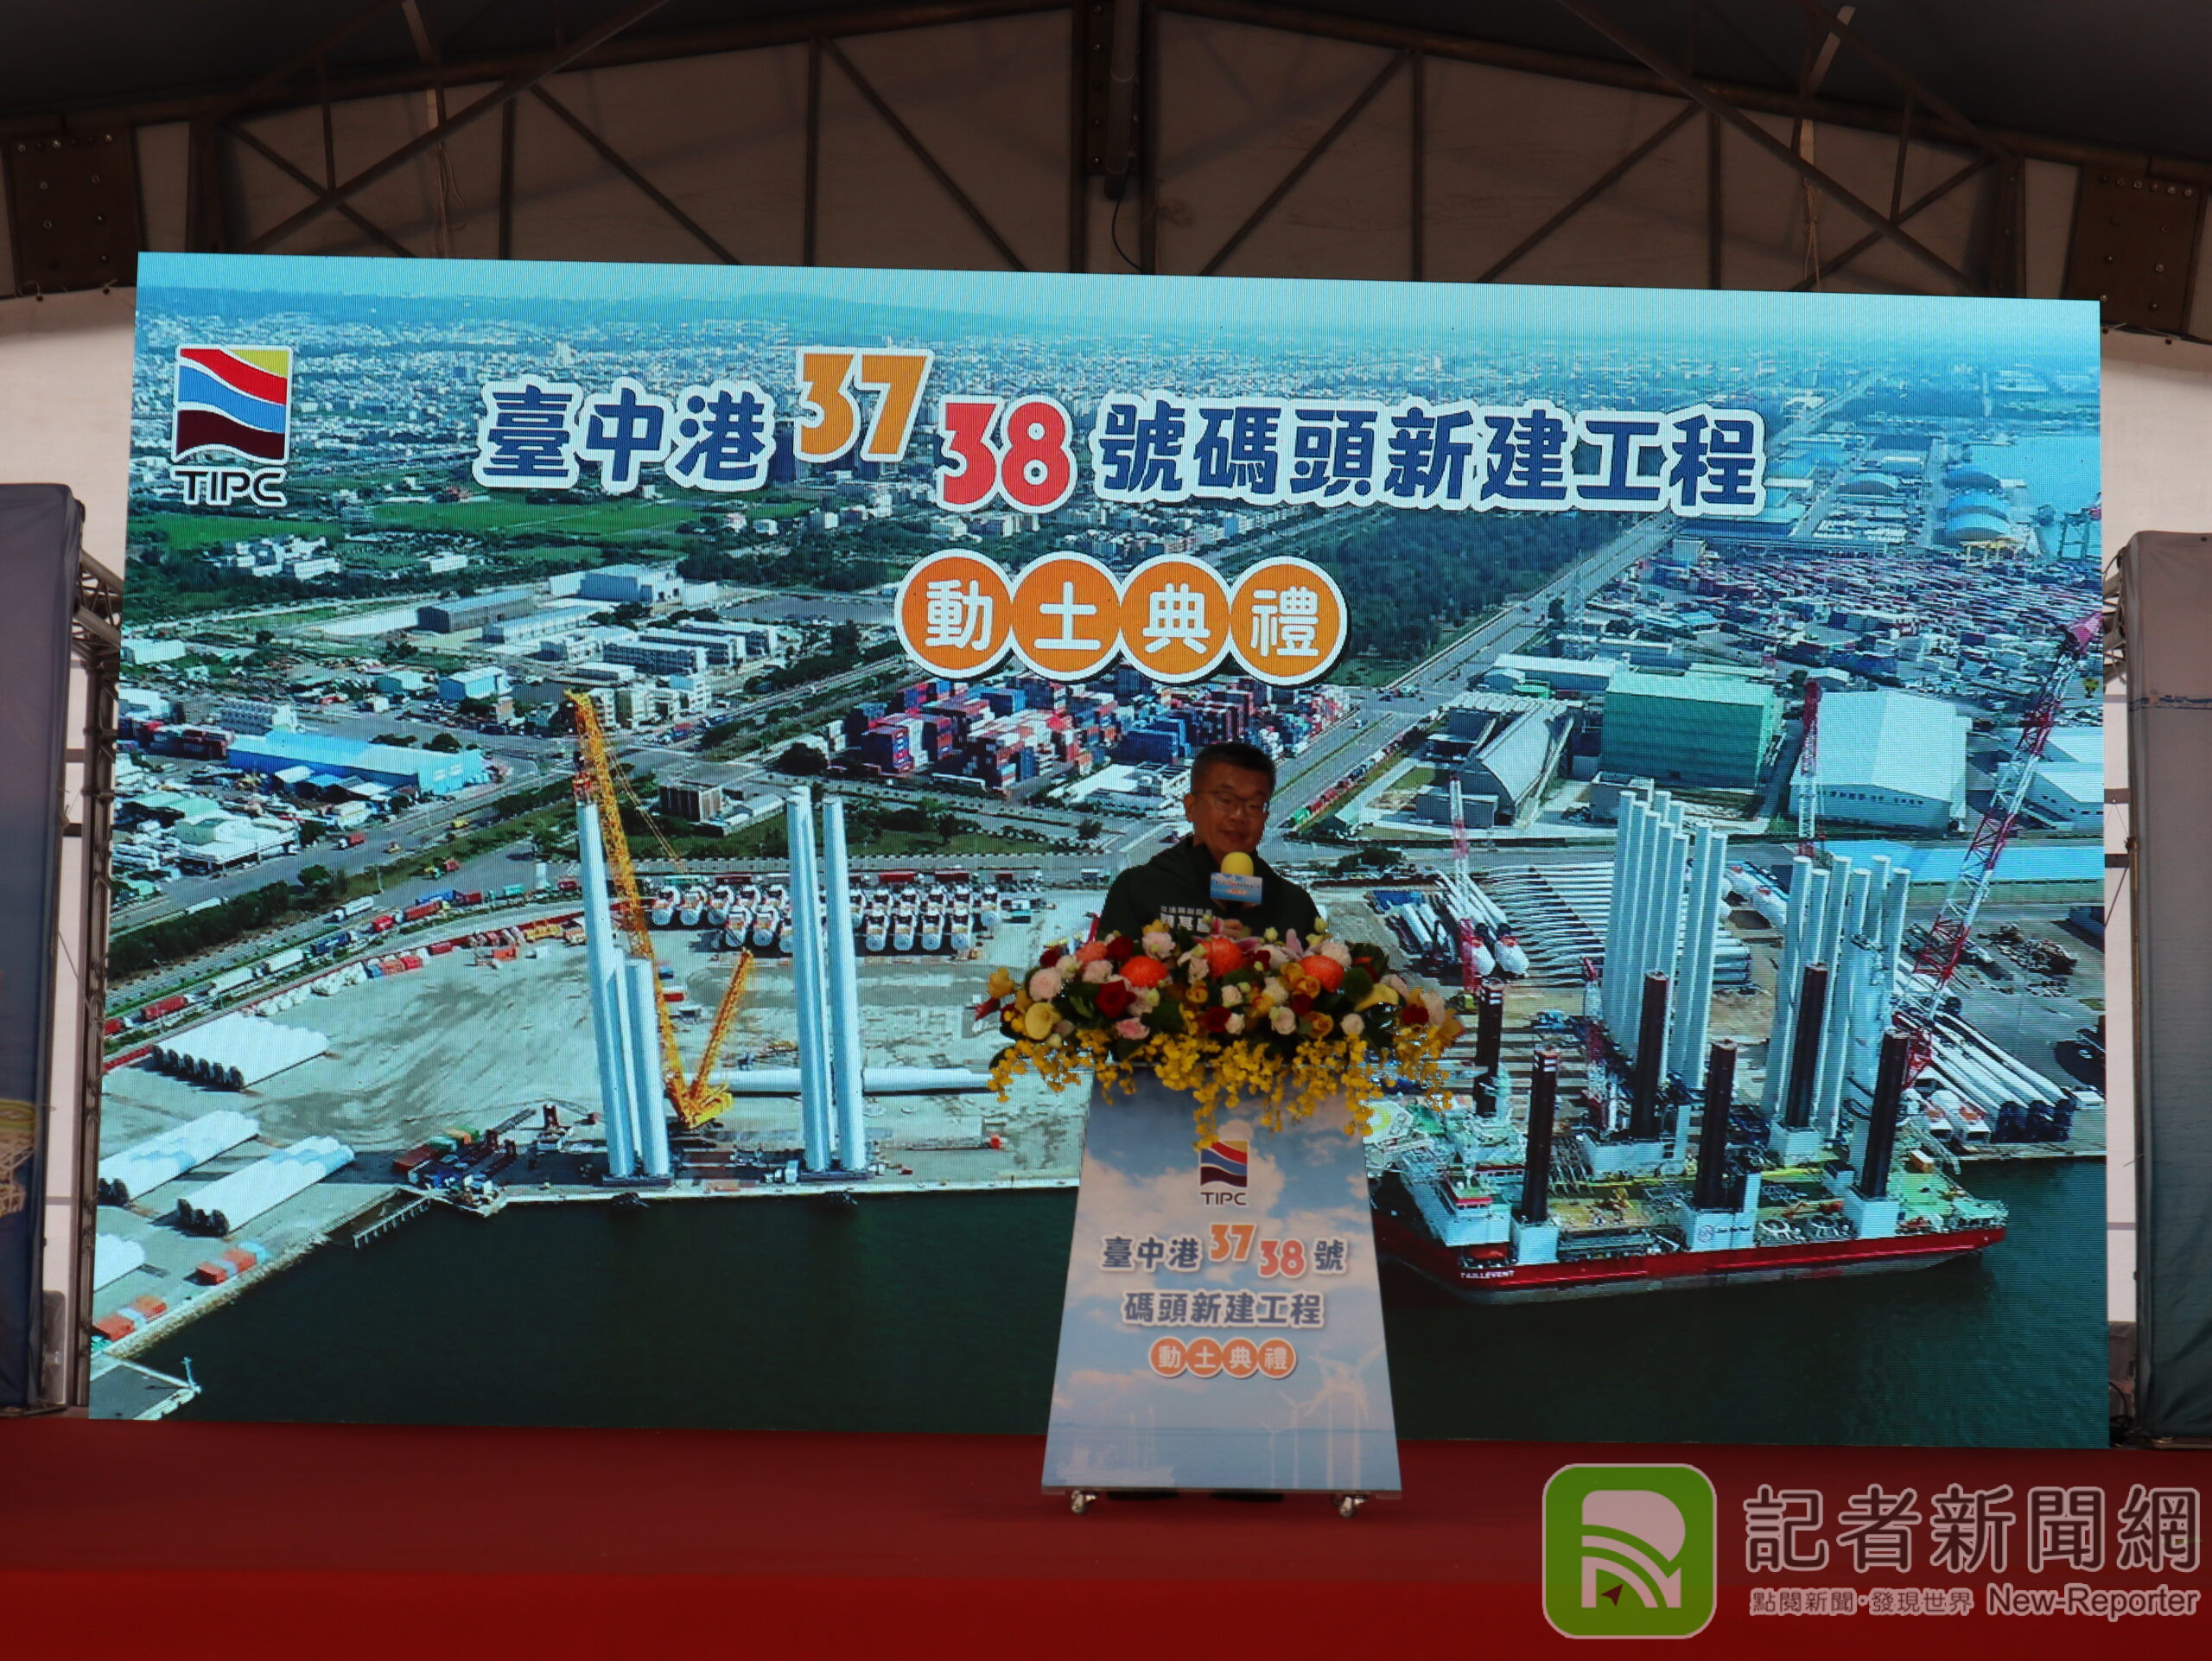 蔡其昌提議捷運藍線終點站與新台中港務公司大樓共構 打造台中港新地標